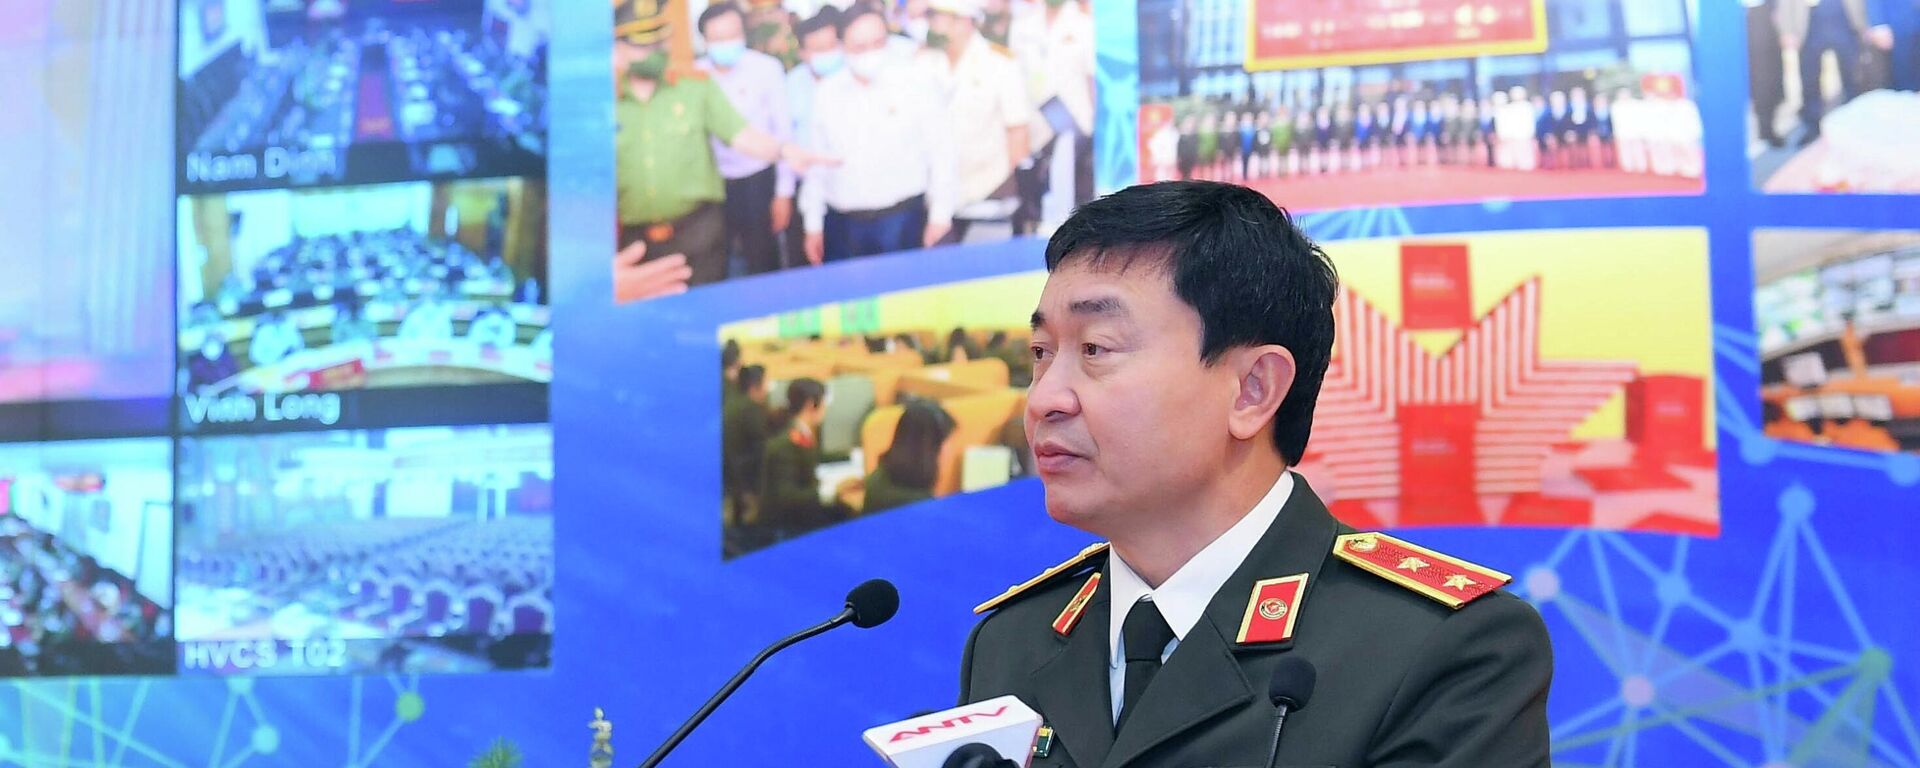 Trung tướng Nguyễn Minh Chính, Cục trưởng Cục An ninh mạng và phòng, chống tội phạm sử dụng công nghệ cao, Bộ Công an (A05) trình bày tham luận - Sputnik Việt Nam, 1920, 21.12.2021